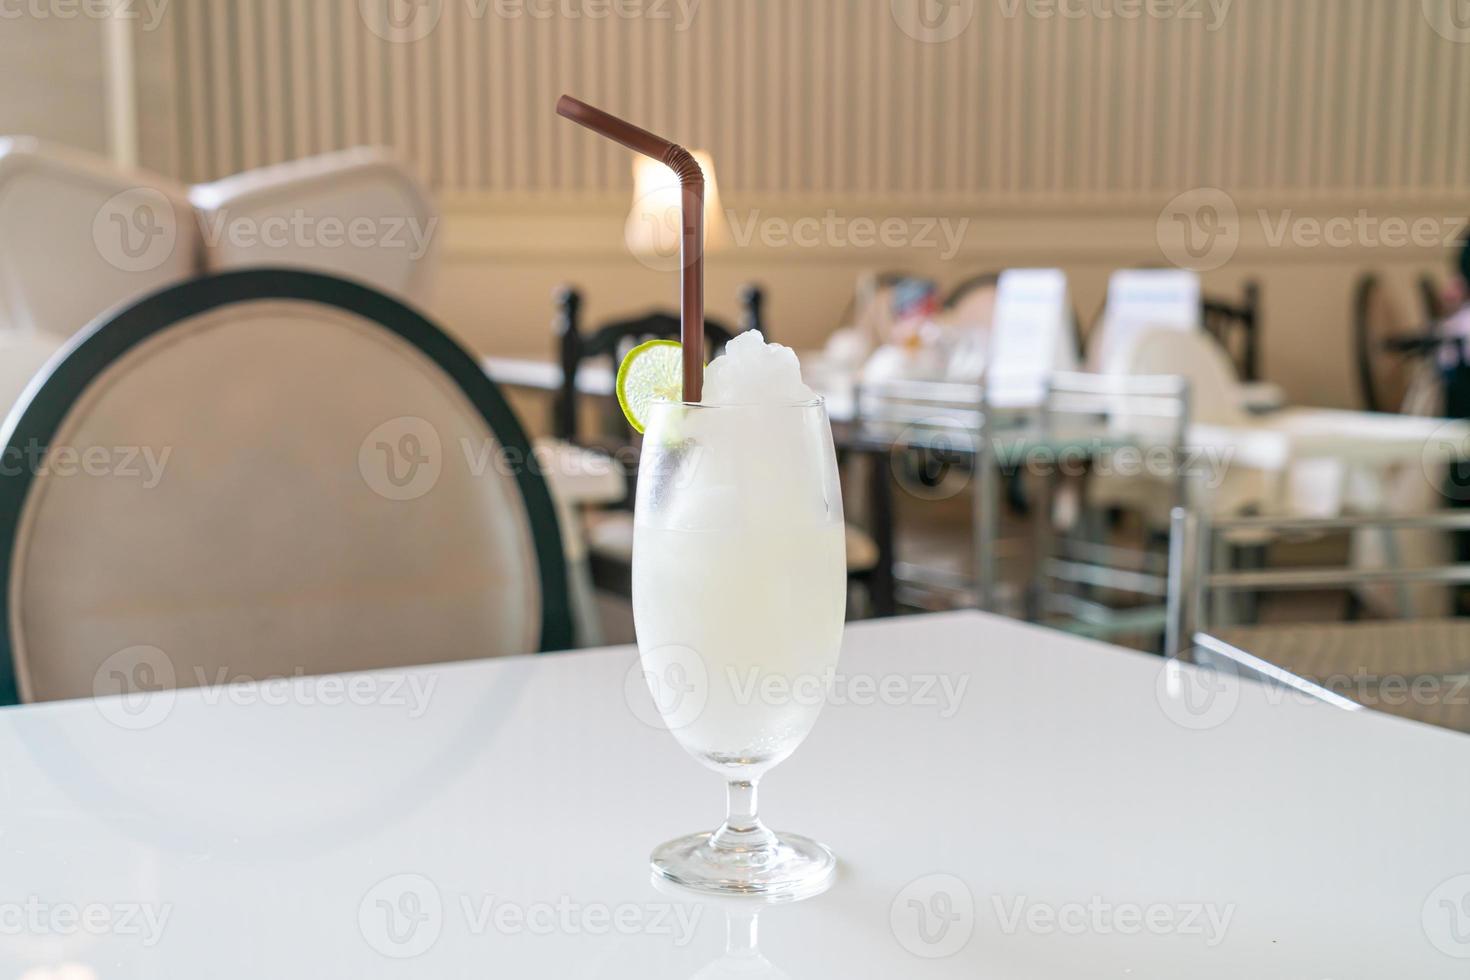 copo de suco de limão fresco em café e restaurante foto